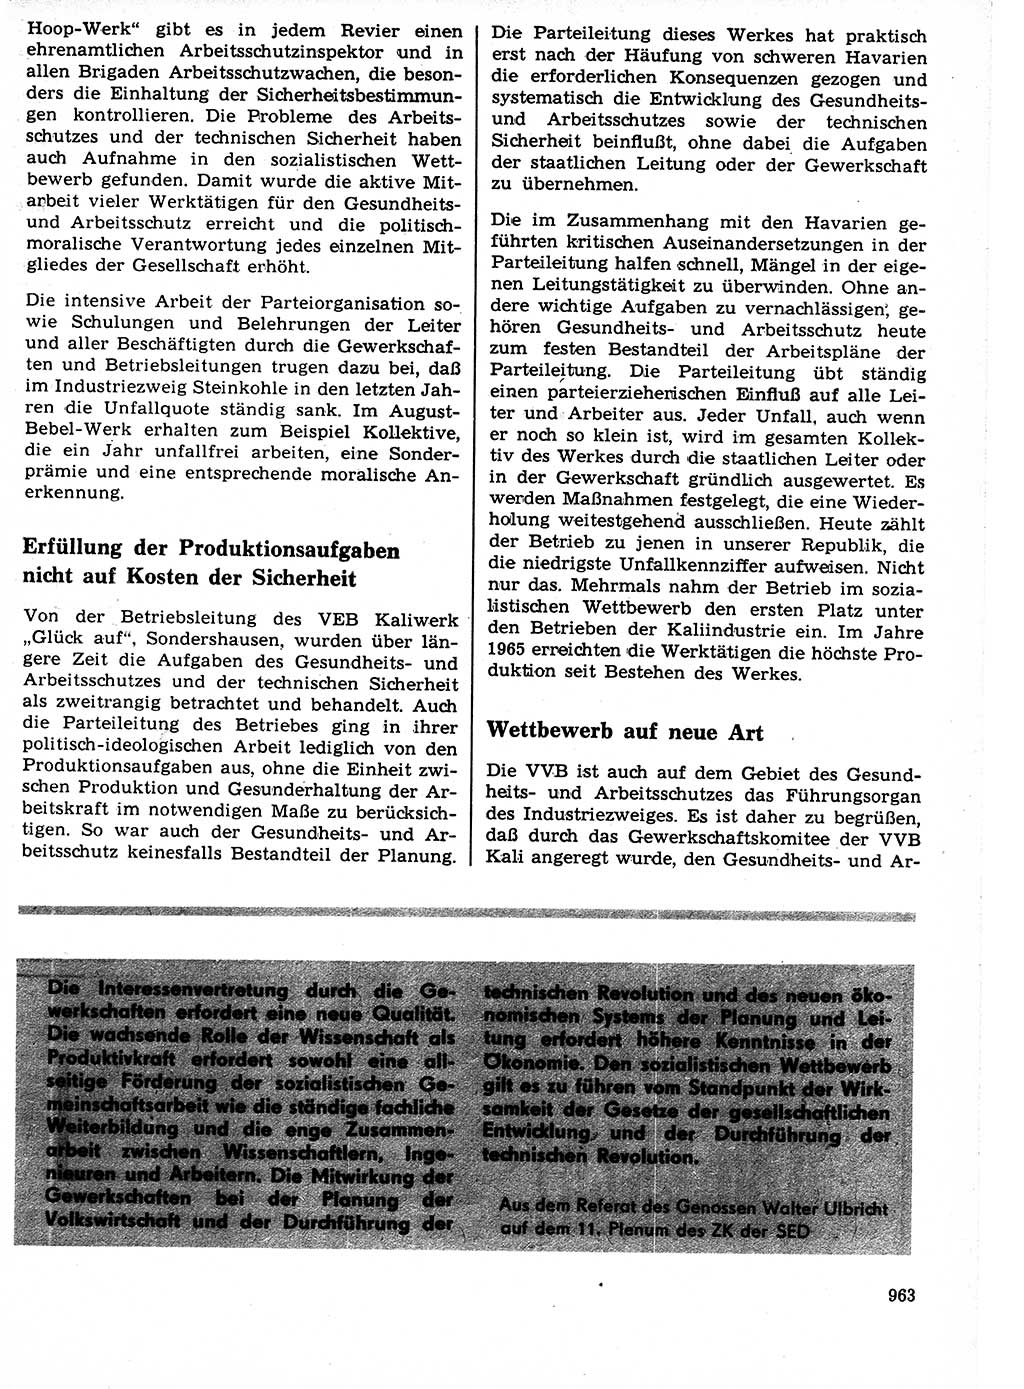 Neuer Weg (NW), Organ des Zentralkomitees (ZK) der SED (Sozialistische Einheitspartei Deutschlands) für Fragen des Parteilebens, 21. Jahrgang [Deutsche Demokratische Republik (DDR)] 1966, Seite 963 (NW ZK SED DDR 1966, S. 963)